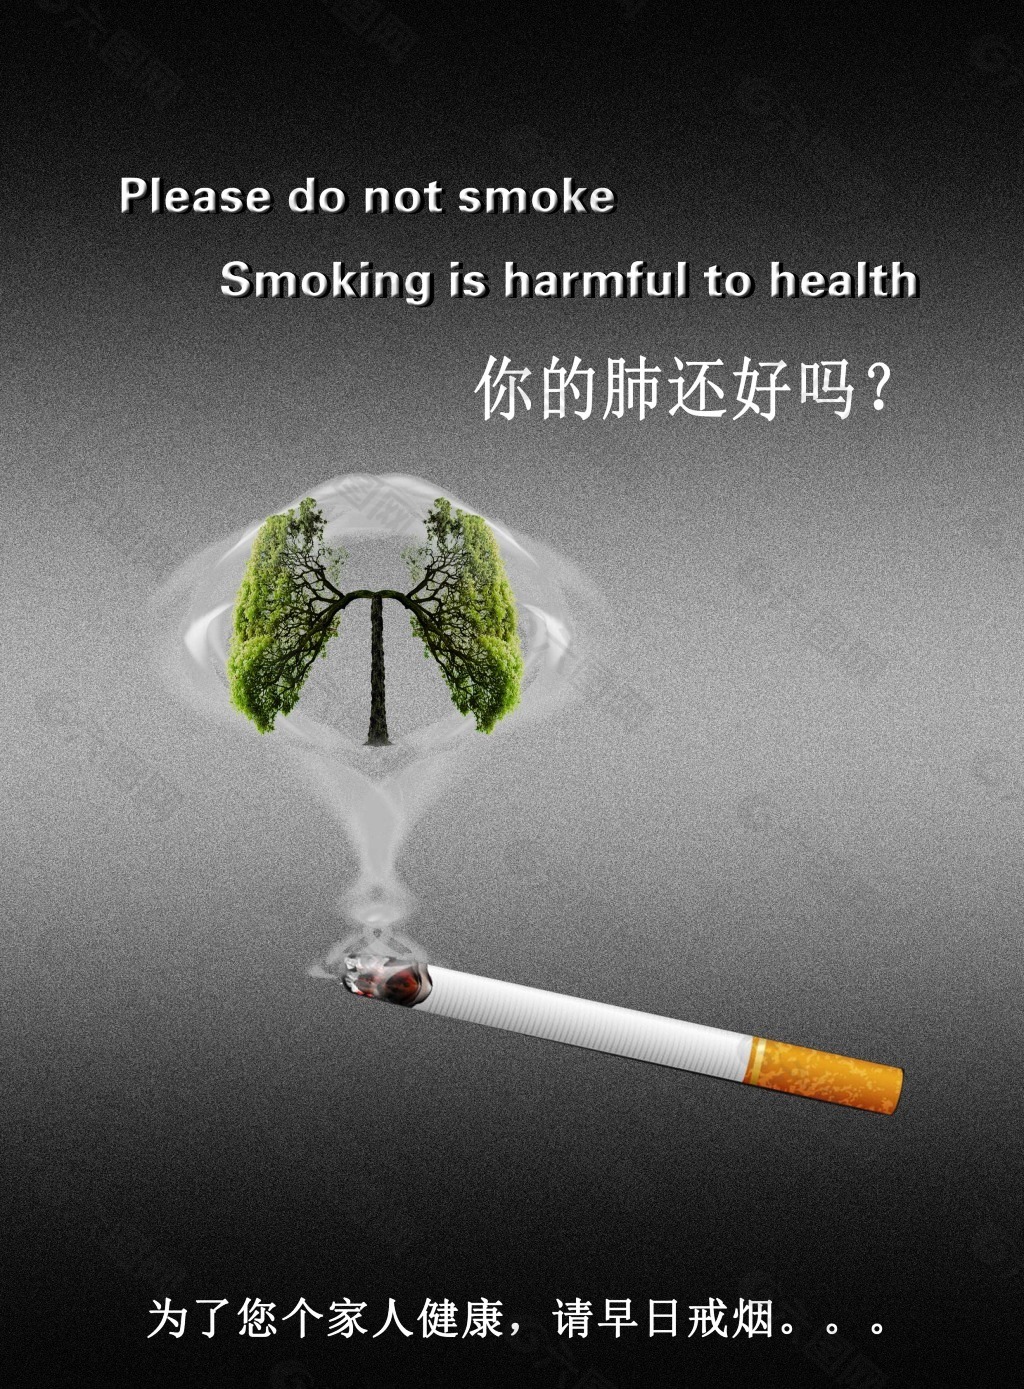 戒烟广告海报健康宣传PSD素材可编辑修改